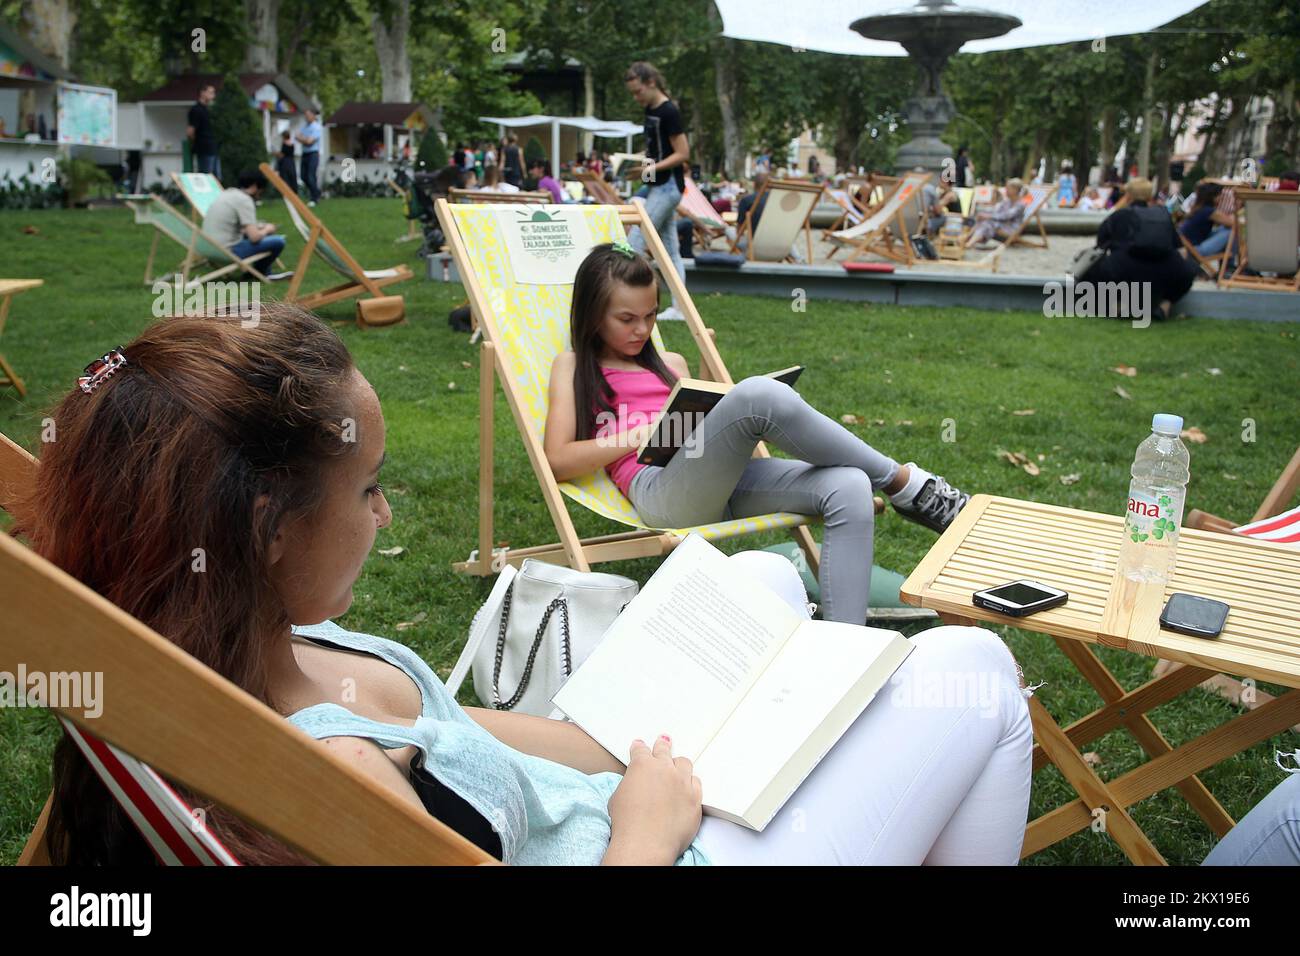 03.07.2017., Zagreb, Kroatien - das dritte Jahr in Folge organisiert der Verlag Lumen eine Buchmesse, die Zagrebs Zrinjevac Park in eine Oase für Bücherwürmer und zukünftige Bücherliebhaber verwandelt. Der Park ist mit Sand bedeckt, es gibt Sonnenschirme und Liegestühle, so dass die Besucher mehr als 200 kostenlose Bücher im Schatten lesen und einige von ihnen zu einem ermäßigten Preis kaufen können. Besucher können sich bei einem der Cocktails abkühlen, die von Buchtiteln inspiriert sind, die man am Lumen's Beach findet. Foto: Goran Stanzl/PIXSELL Stockfoto